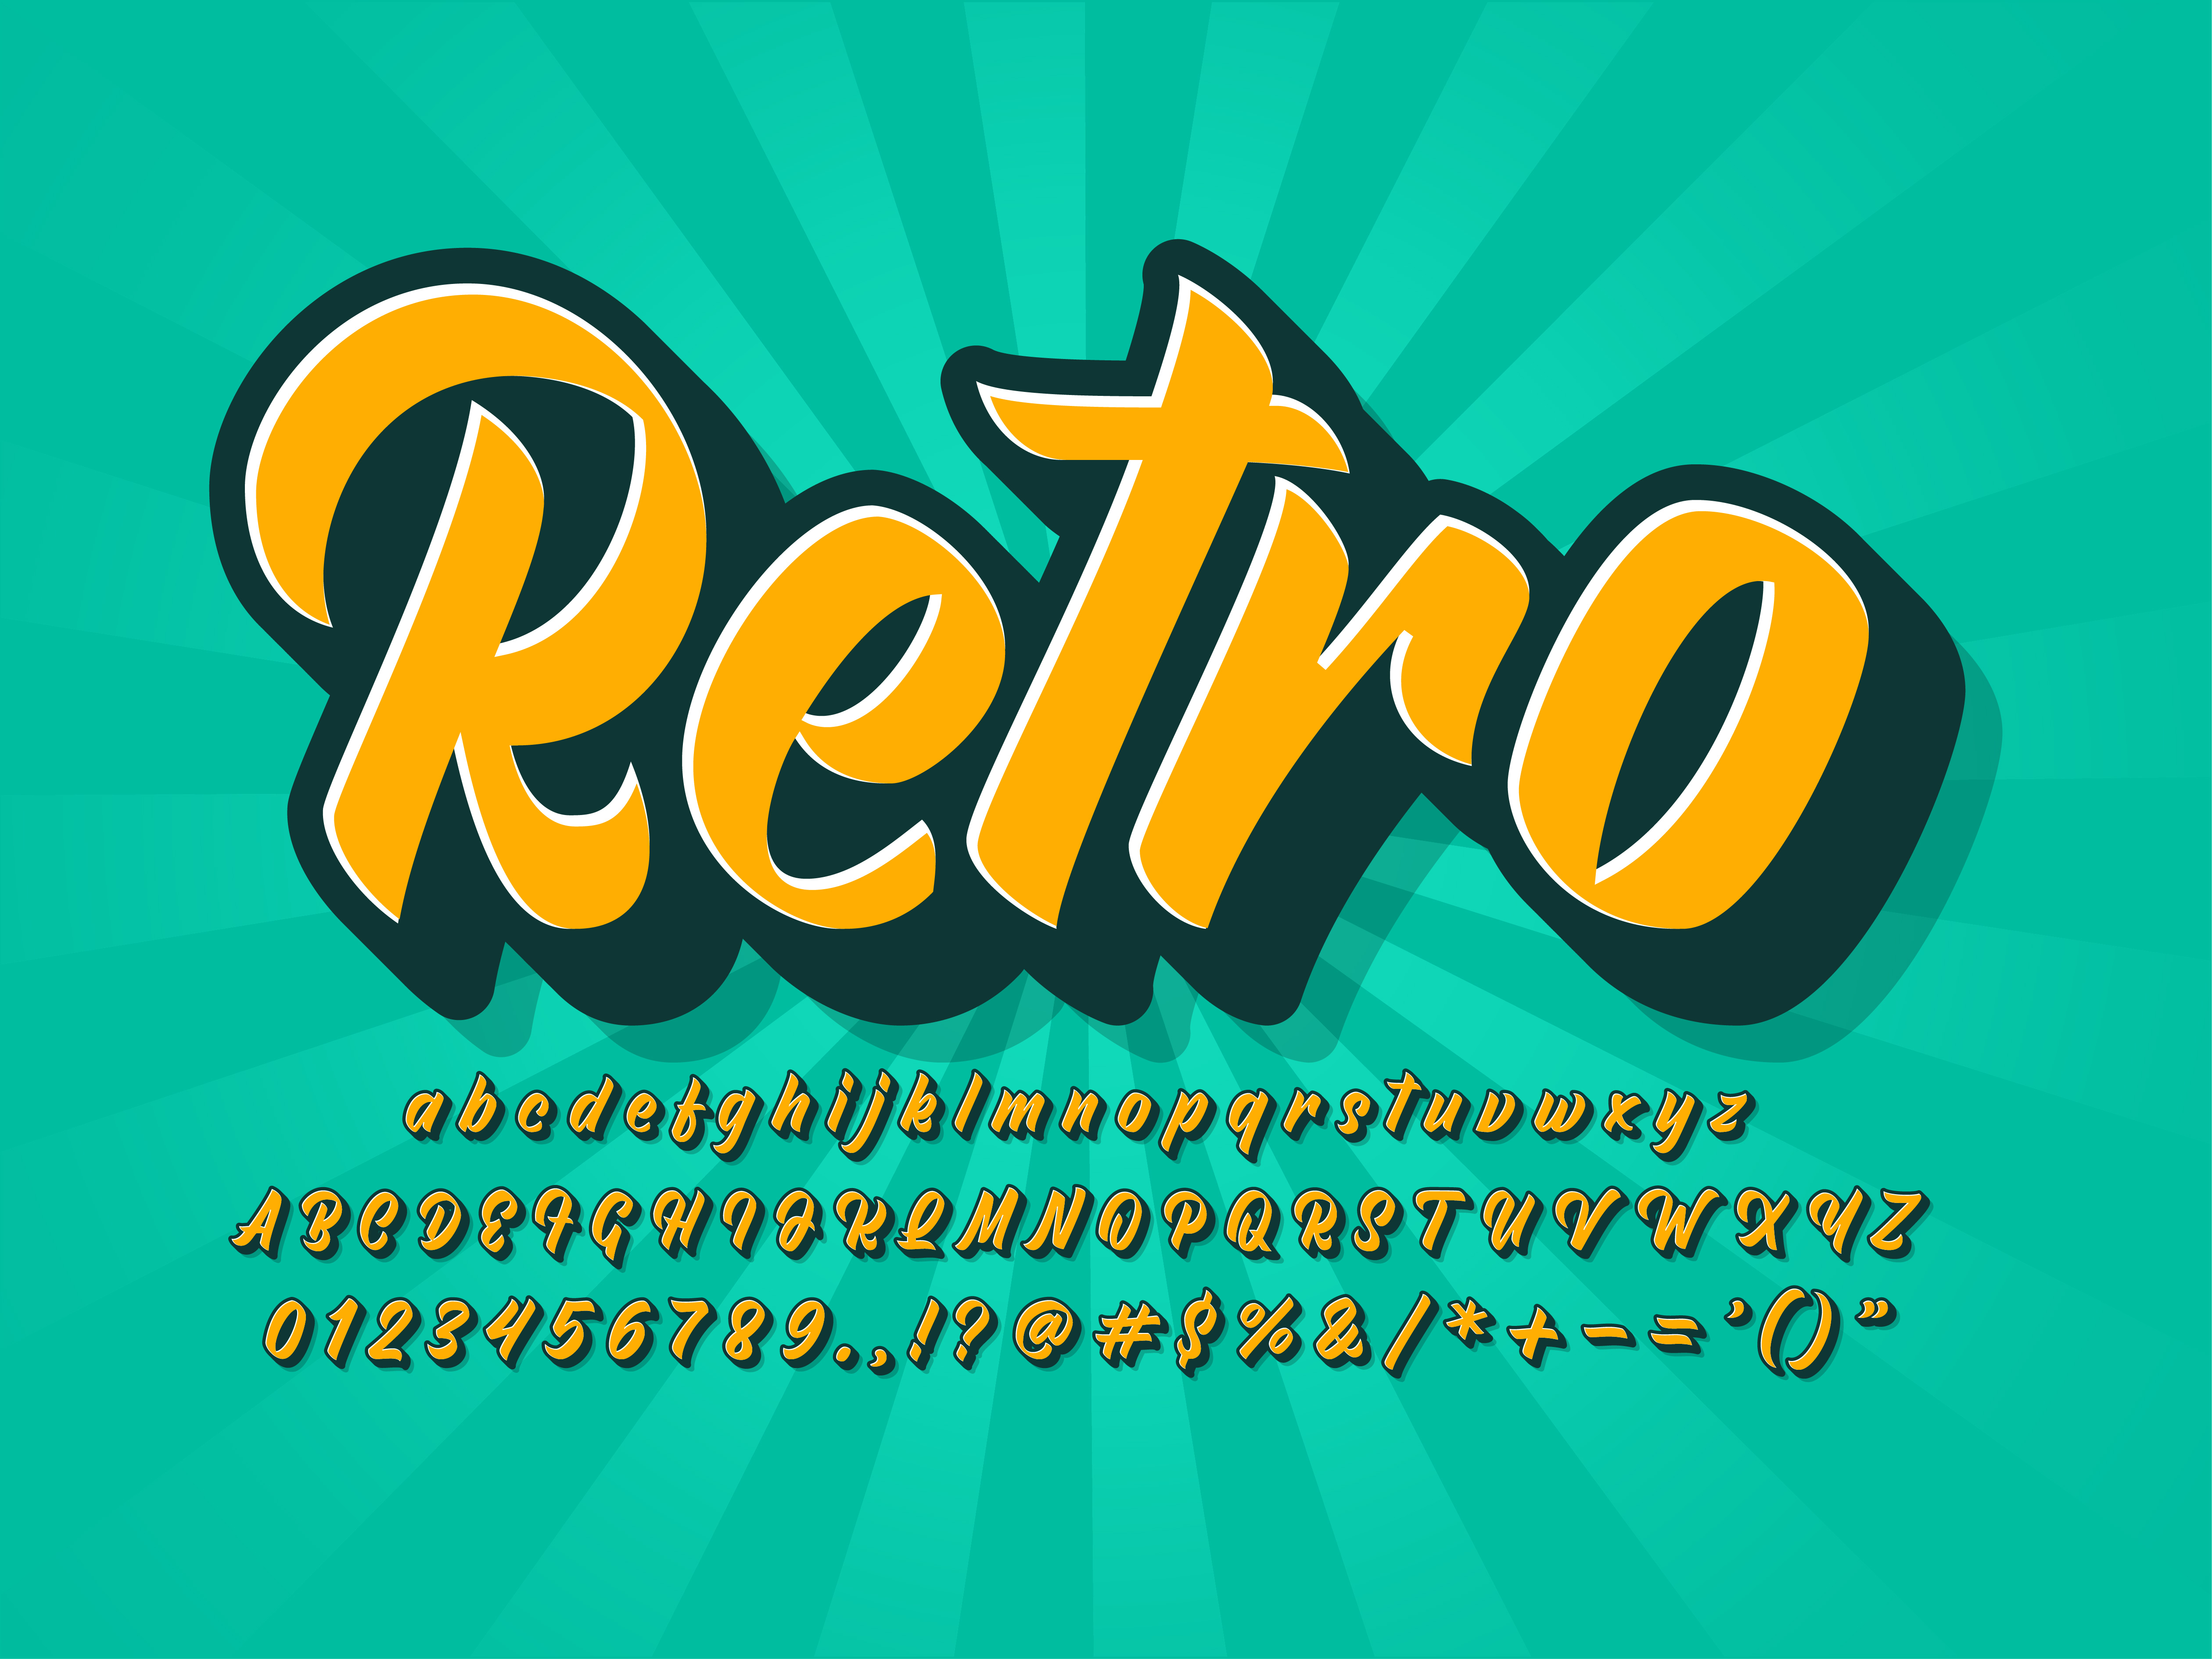 Download Vintage Retro Font 555605 - Download Free Vectors, Clipart Graphics & Vector Art